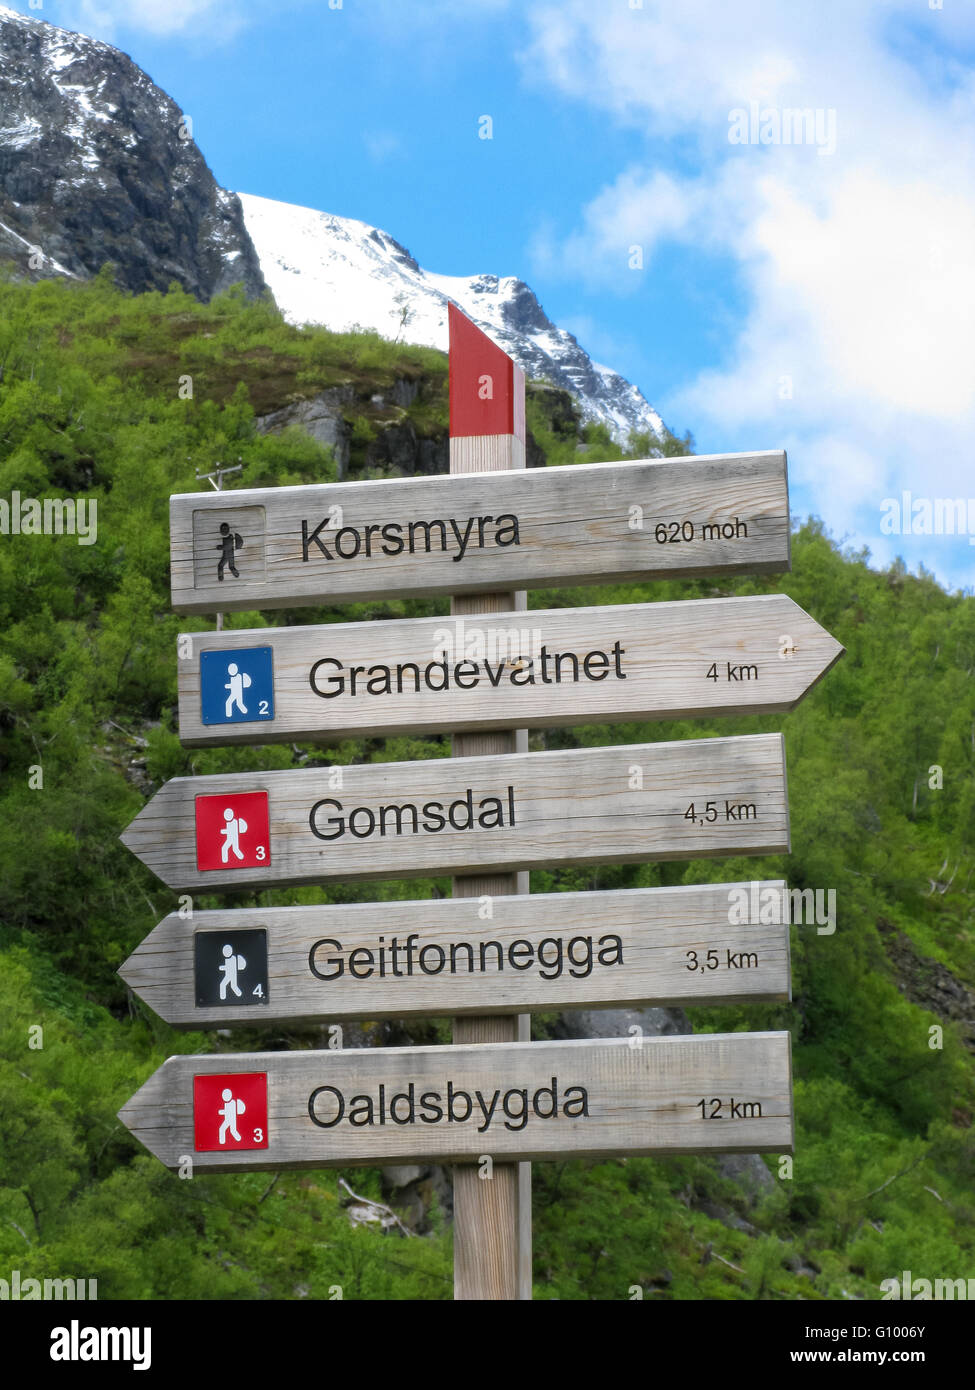 In legno di orientamento per le escursioni con le destinazioni e le distanze per il trekking, Oppland, Norvegia e Scandinavia Foto Stock